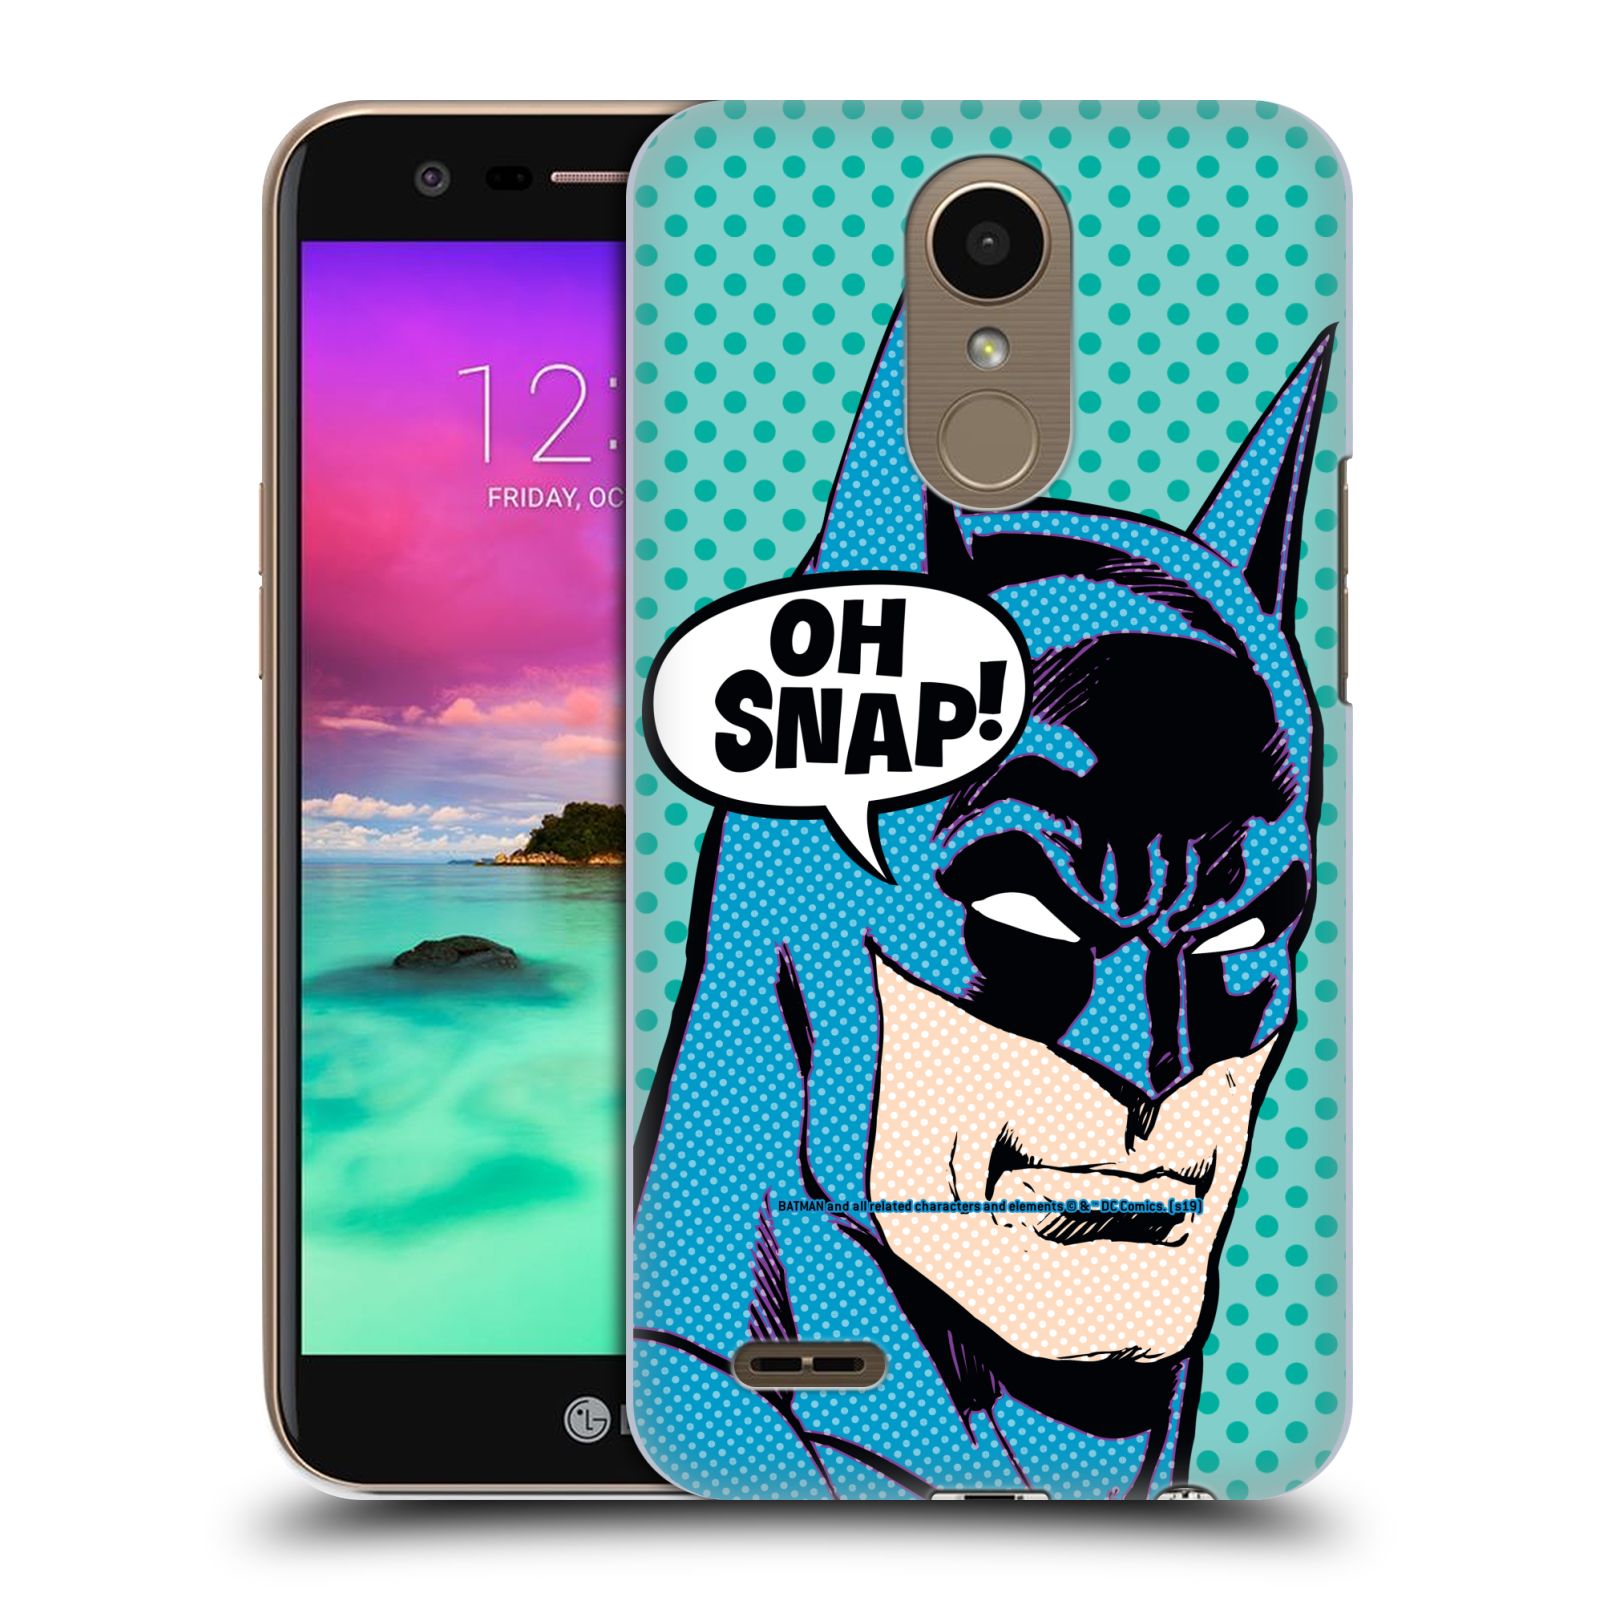 Pouzdro na mobil LG K10 2017 / K10 2017 DUAL SIM - HEAD CASE - DC komix Batman Pop Art tvář